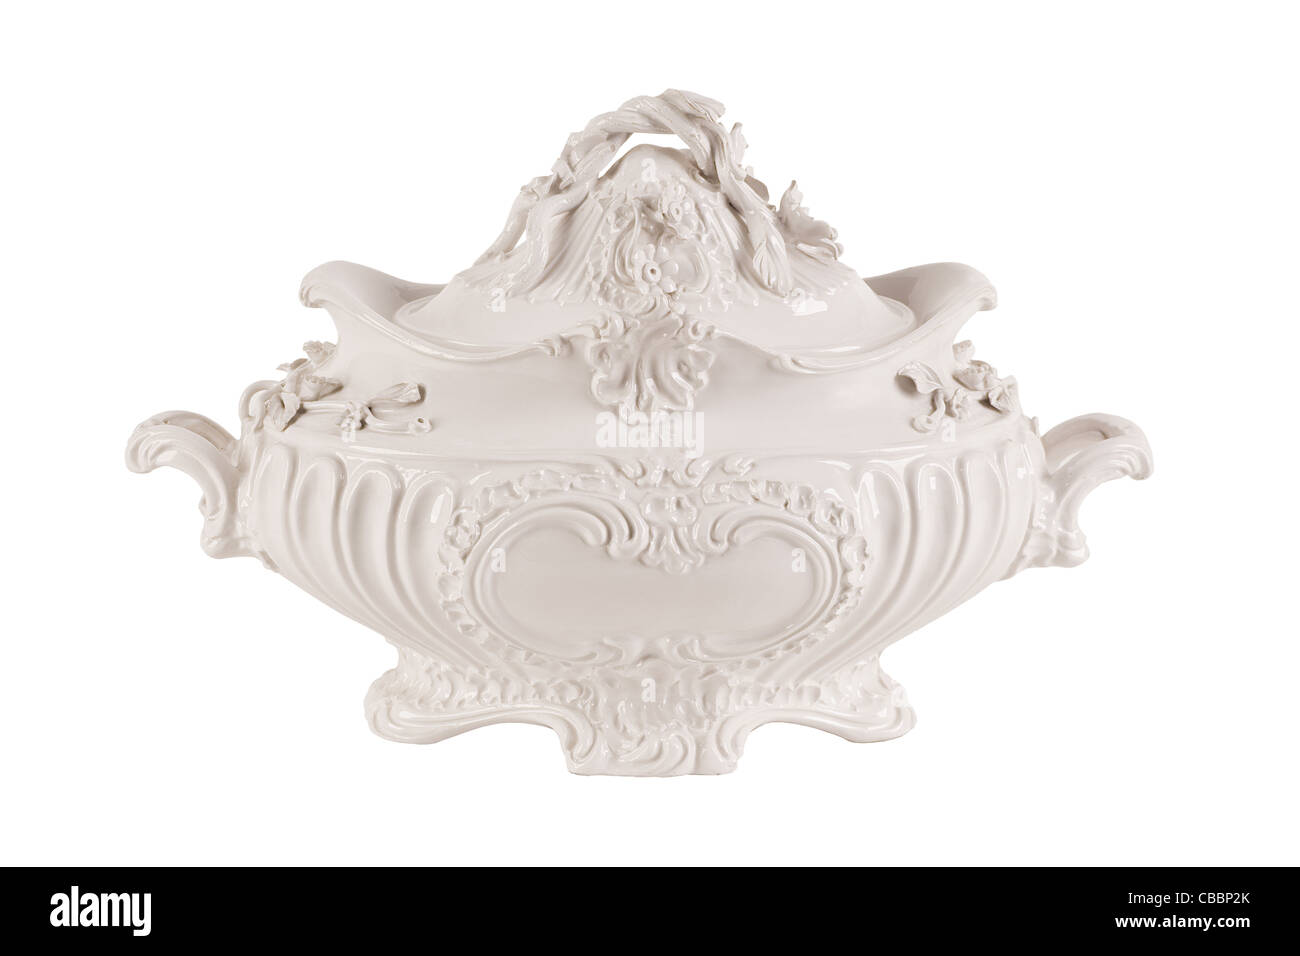 Ancienne soupière en porcelaine, décor riche en style baroque Banque D'Images